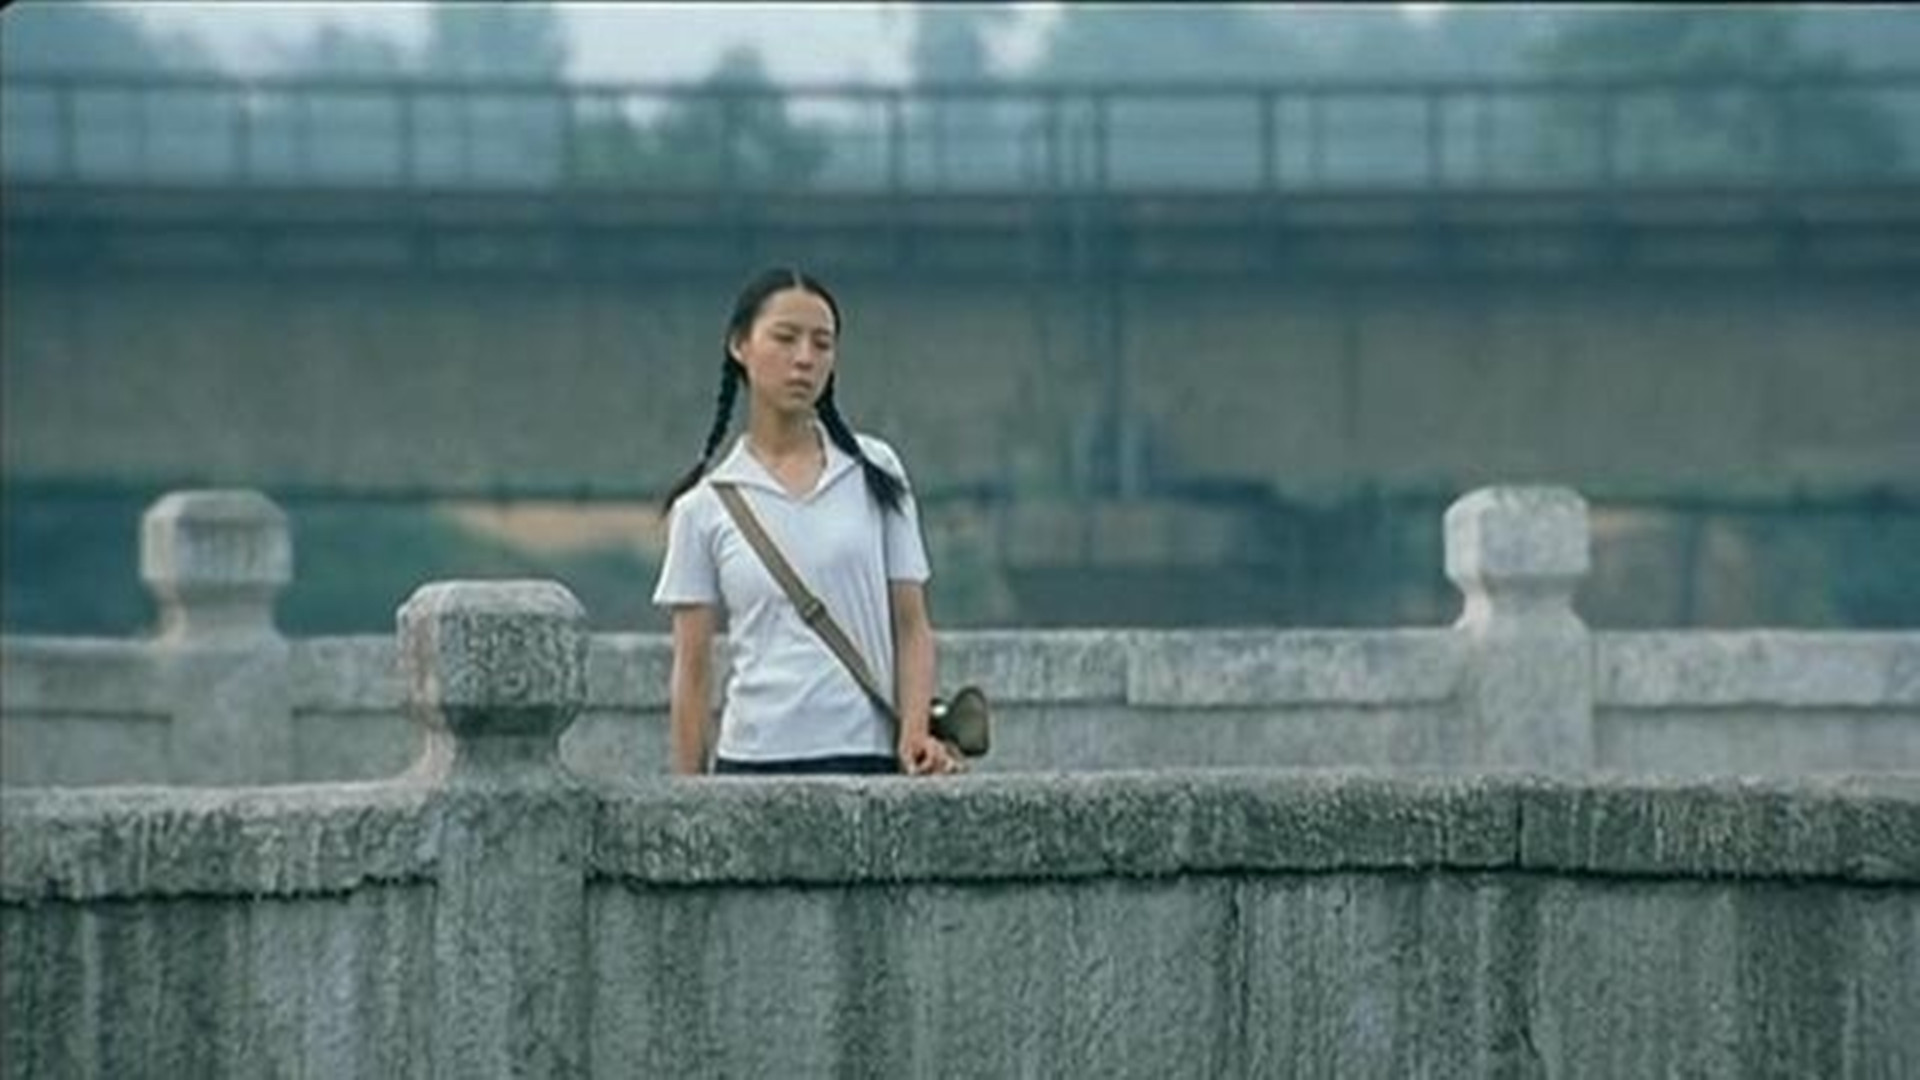 2005年,张静初和吕聿来主演剧情电影《孔雀》,这部影片讲述了生活在上